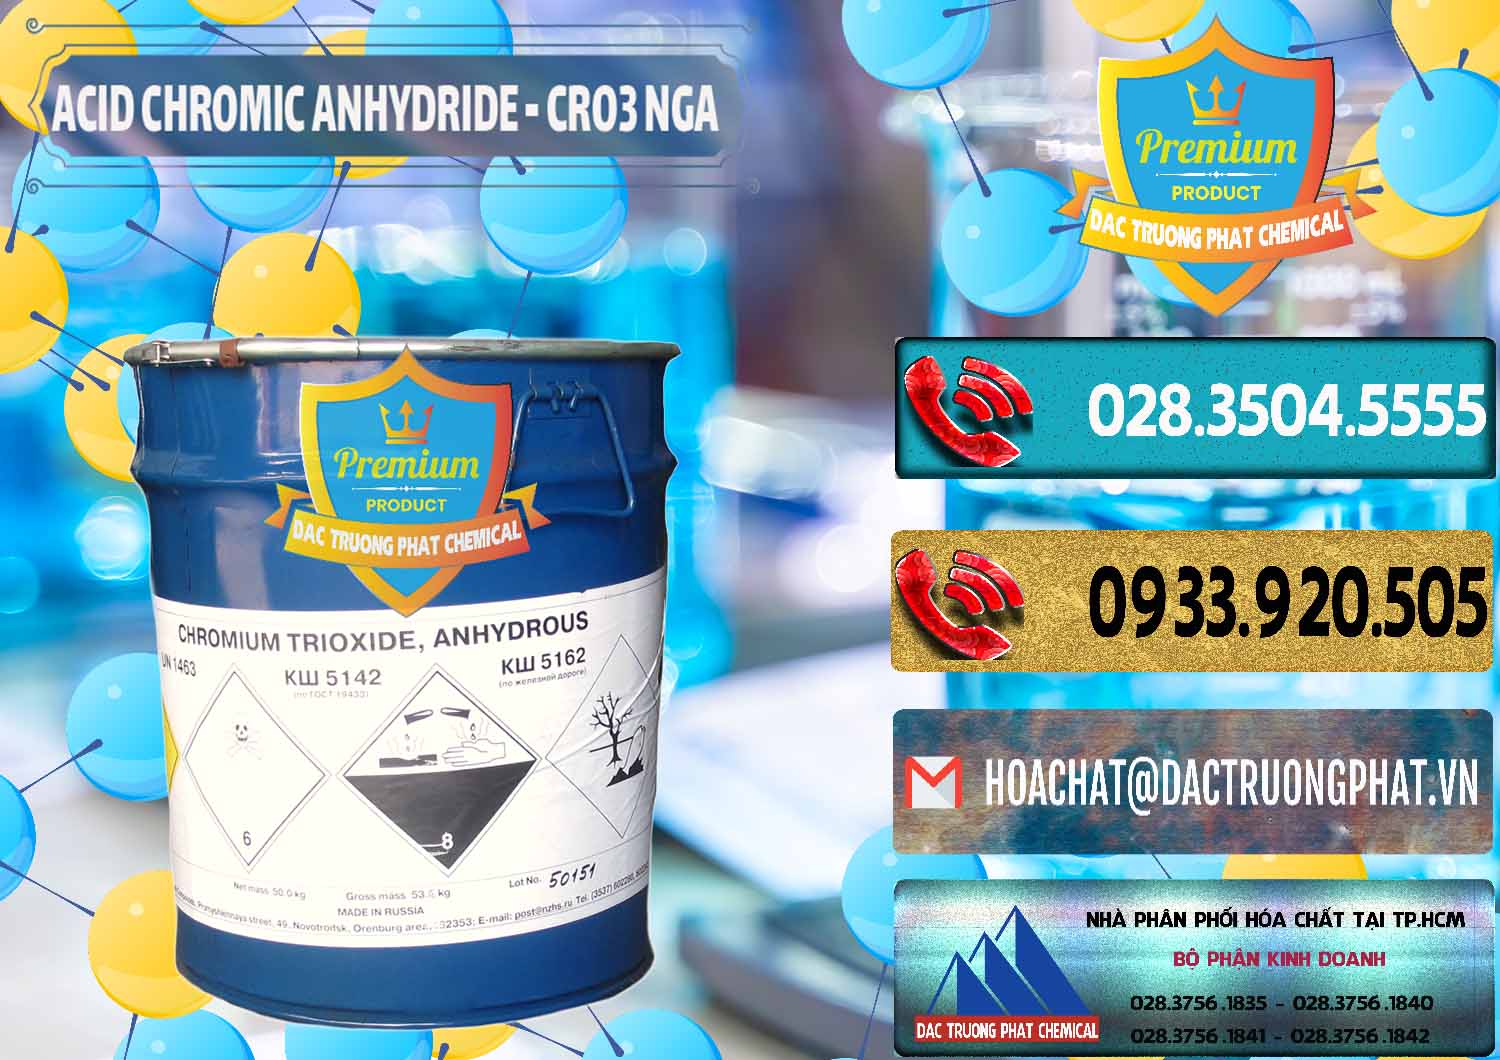 Công ty chuyên phân phối và bán Acid Chromic Anhydride - Cromic CRO3 Nga Russia - 0006 - Nhà cung cấp ( phân phối ) hóa chất tại TP.HCM - hoachatdetnhuom.com